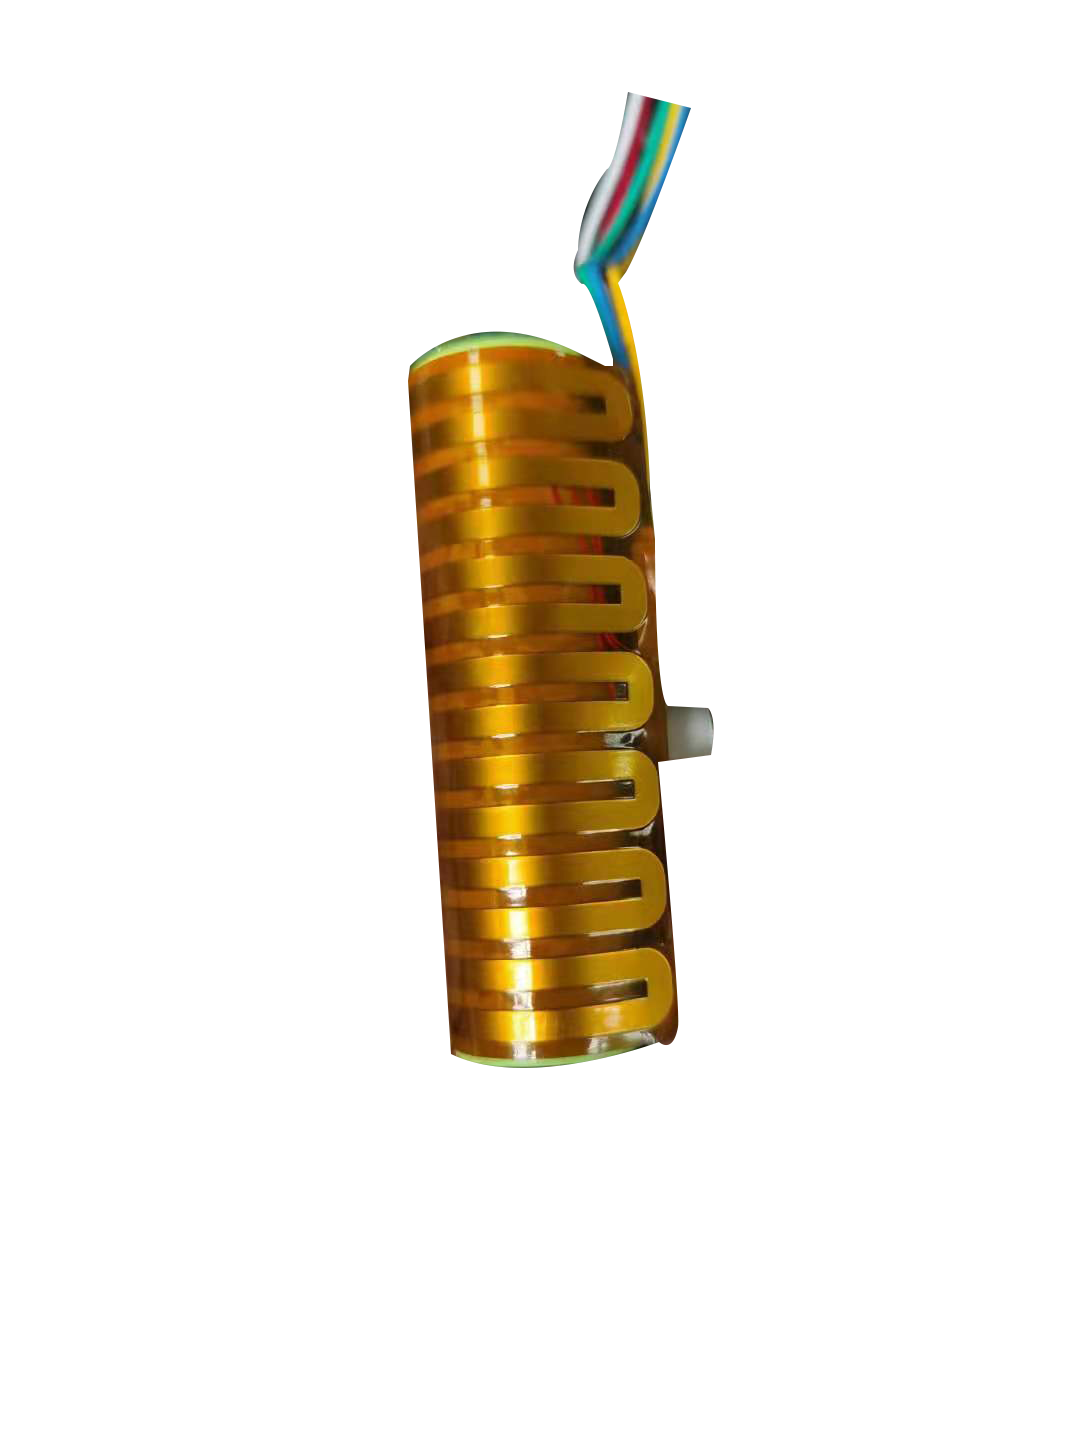 兆科联手华威设计18650锂电池加热片以解决低温环境下动力电池稳定性